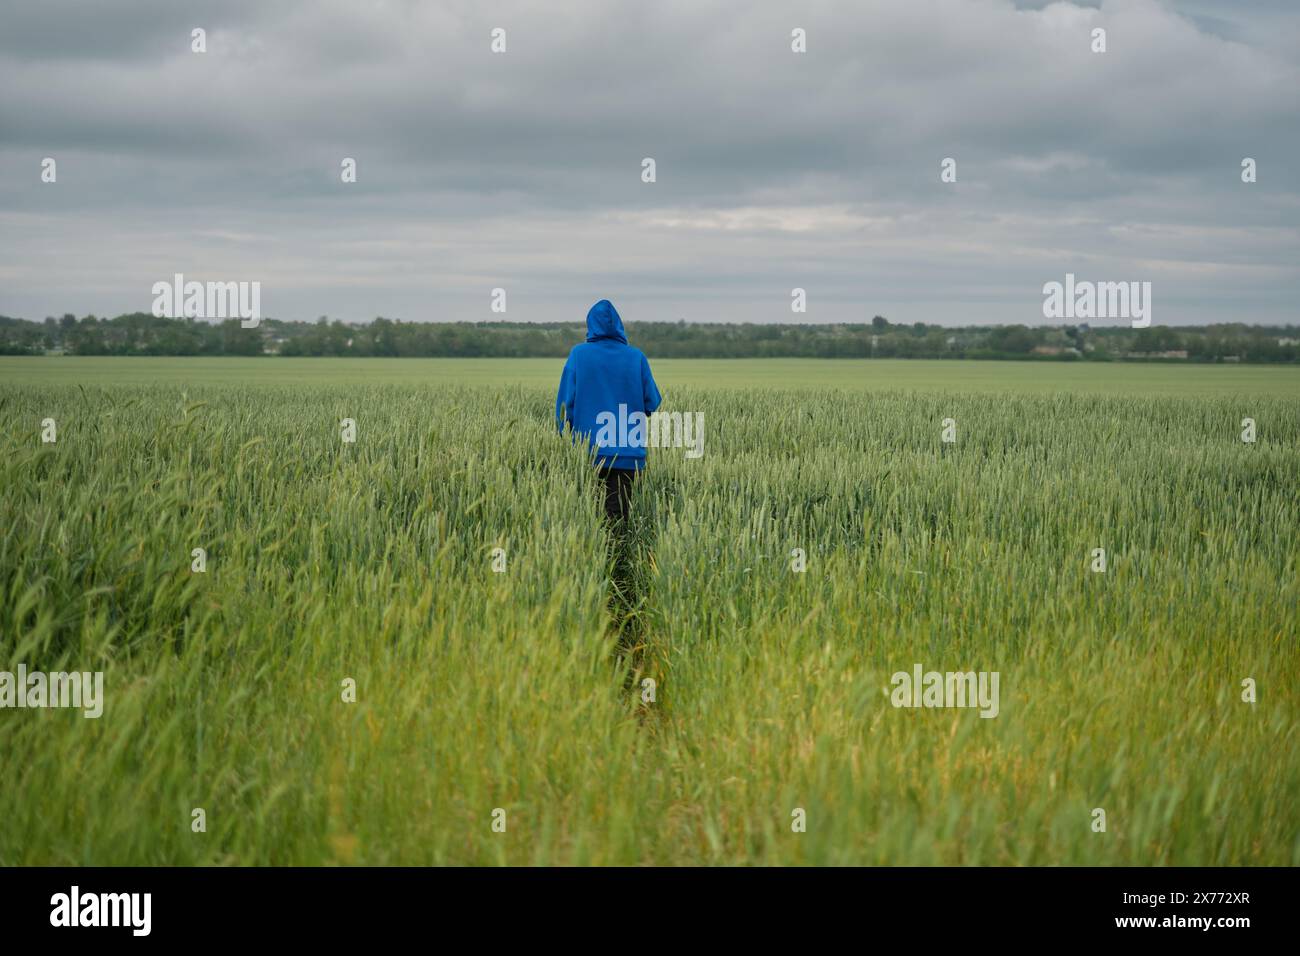 Zwischen einem Feld mit reifendem grünem Weizen spaziert eine Erwachsene Frau in einem blauen Hoodie unter einem stimmungsvollen, bewölkten Himmel, Blick von hinten, selektiver Fokus auf die Frau Stockfoto